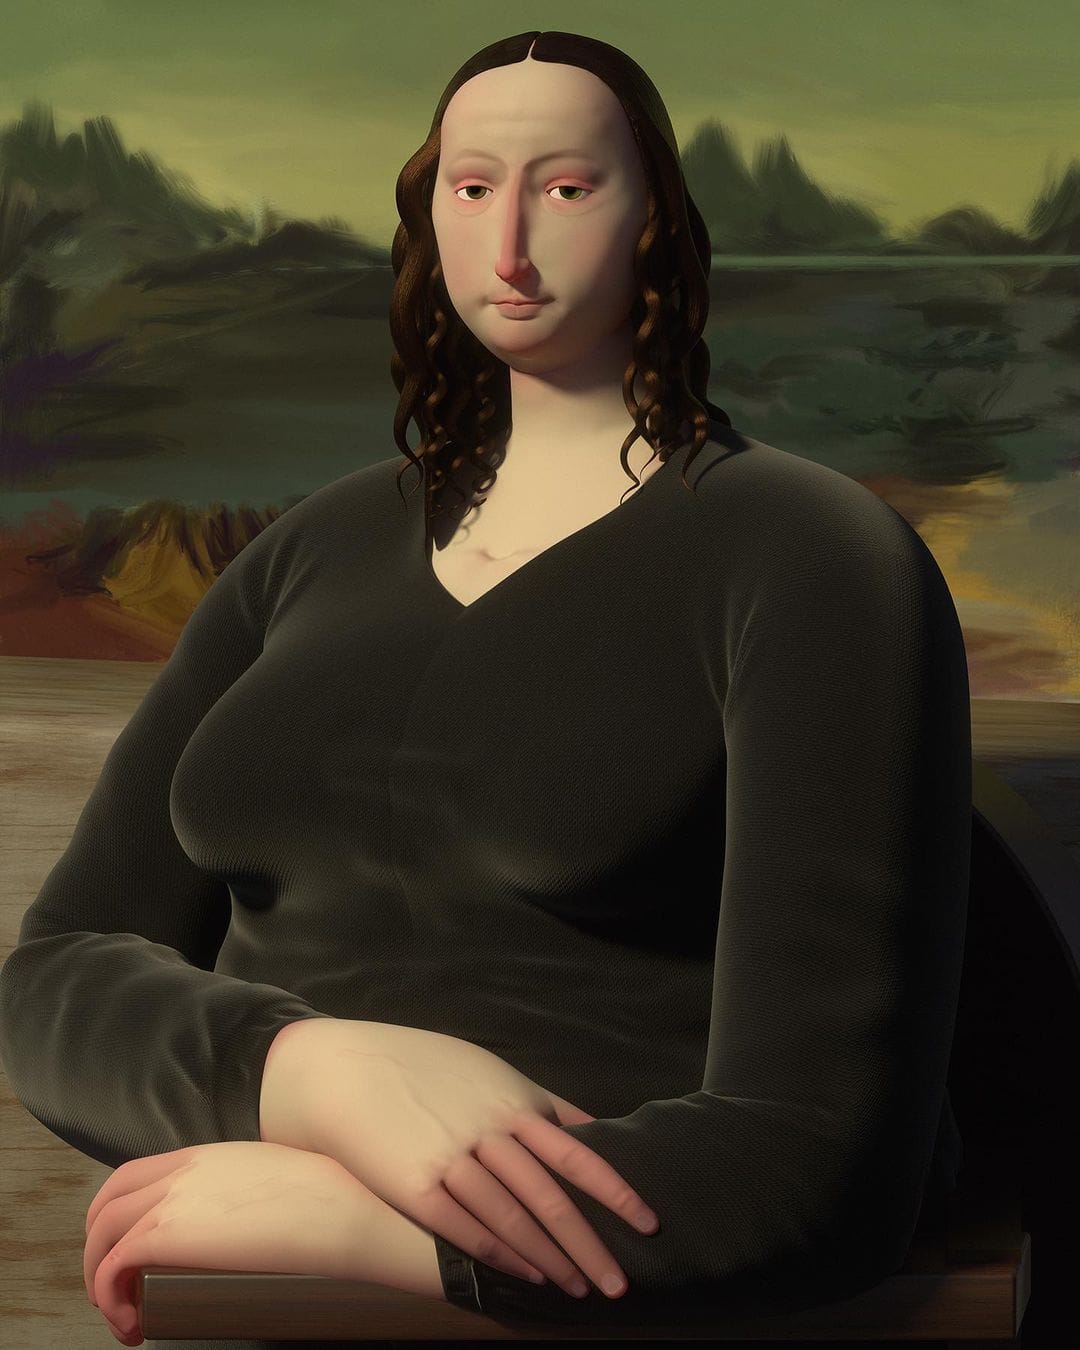 Oeuvre 3D: ici nous observons la célèbre oeuvre de Léonard de Vinci Mona Lisa